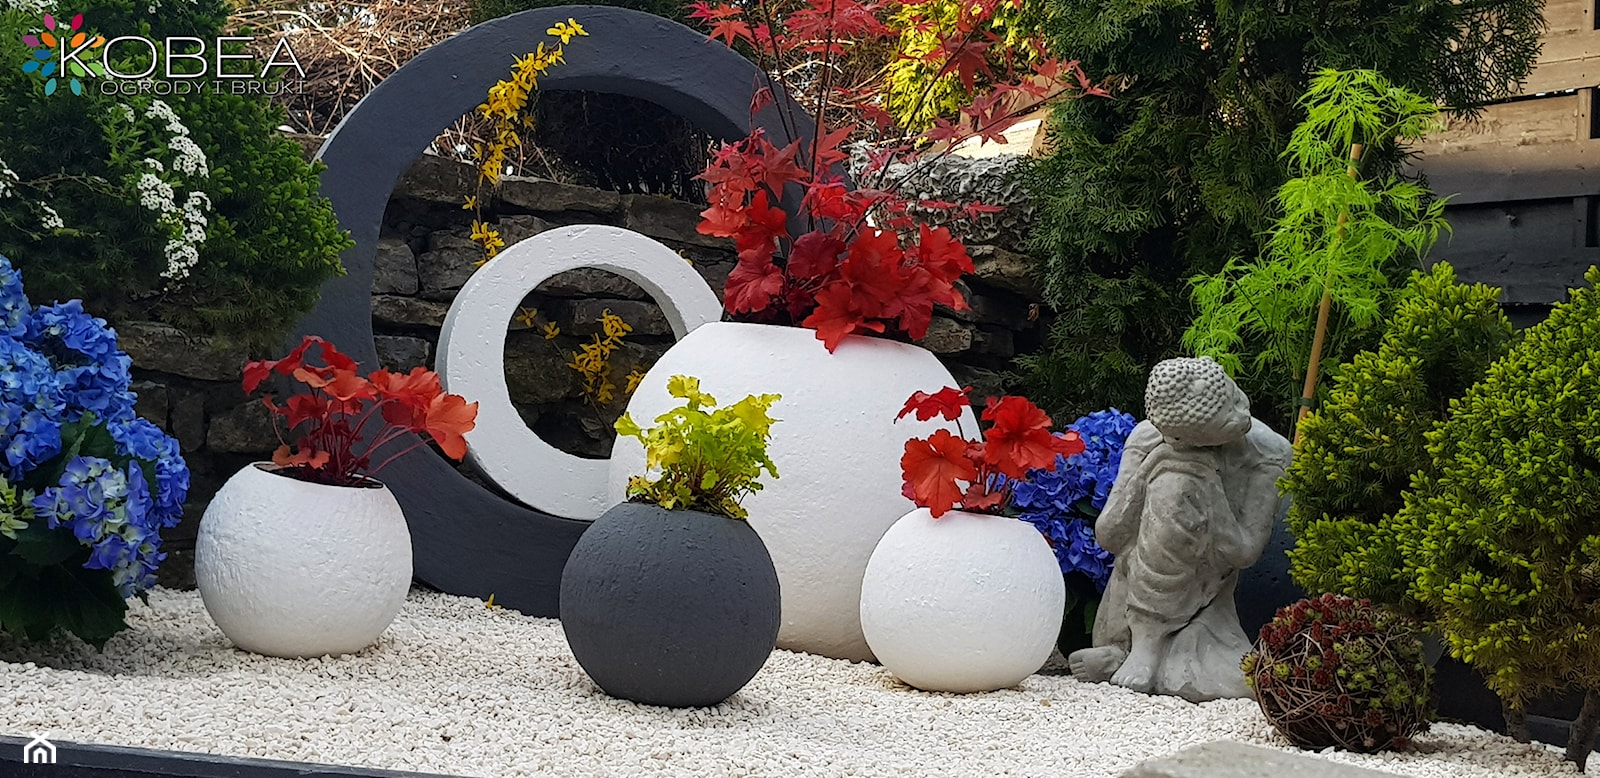 Dekoracje i ozdoby do ogrodu Kobea Ogrody i Bruki - zdjęcie od Ewa Tyrna - Homebook